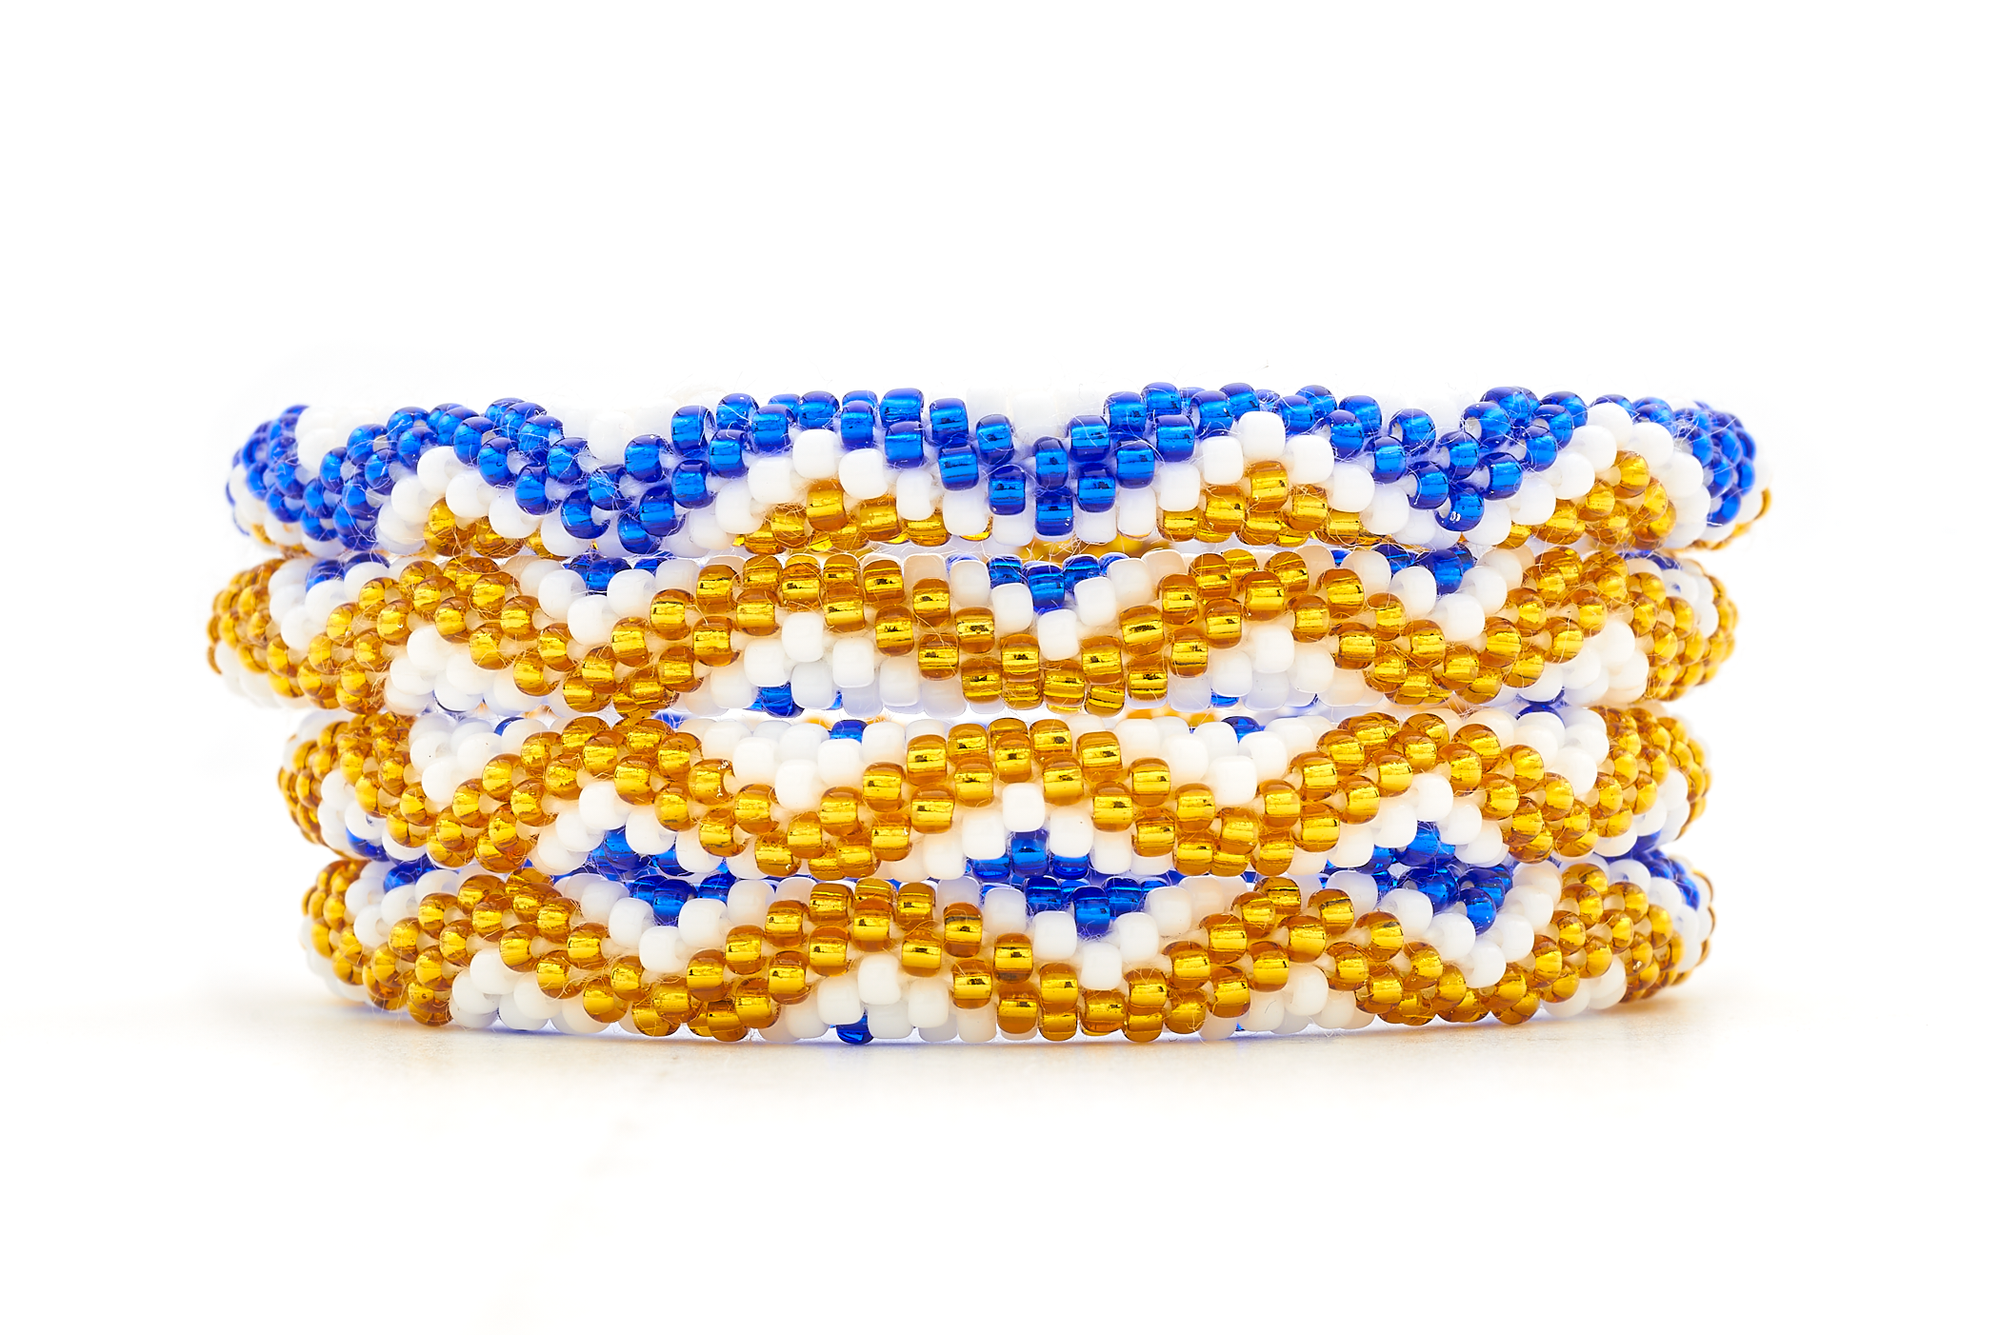 Sashka Co. Extended 8" Bracelet Blue / White / Gold Golden Blue Horizon Bracelet - Extended 8"